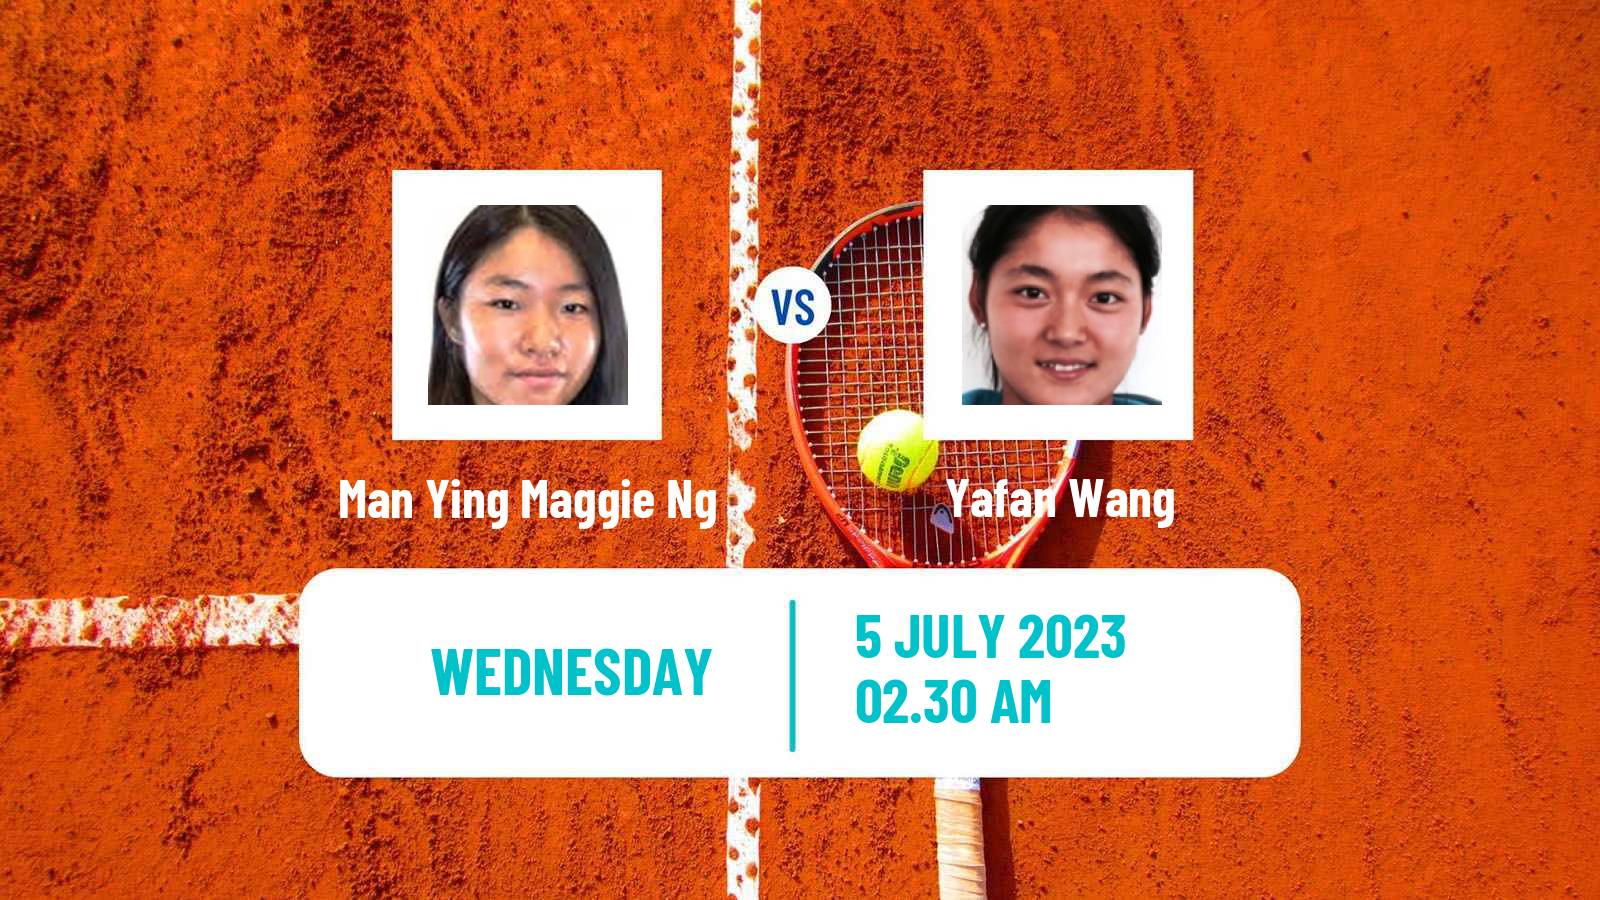 Tennis ITF W40 Hong Kong Women Man Ying Maggie Ng - Yafan Wang